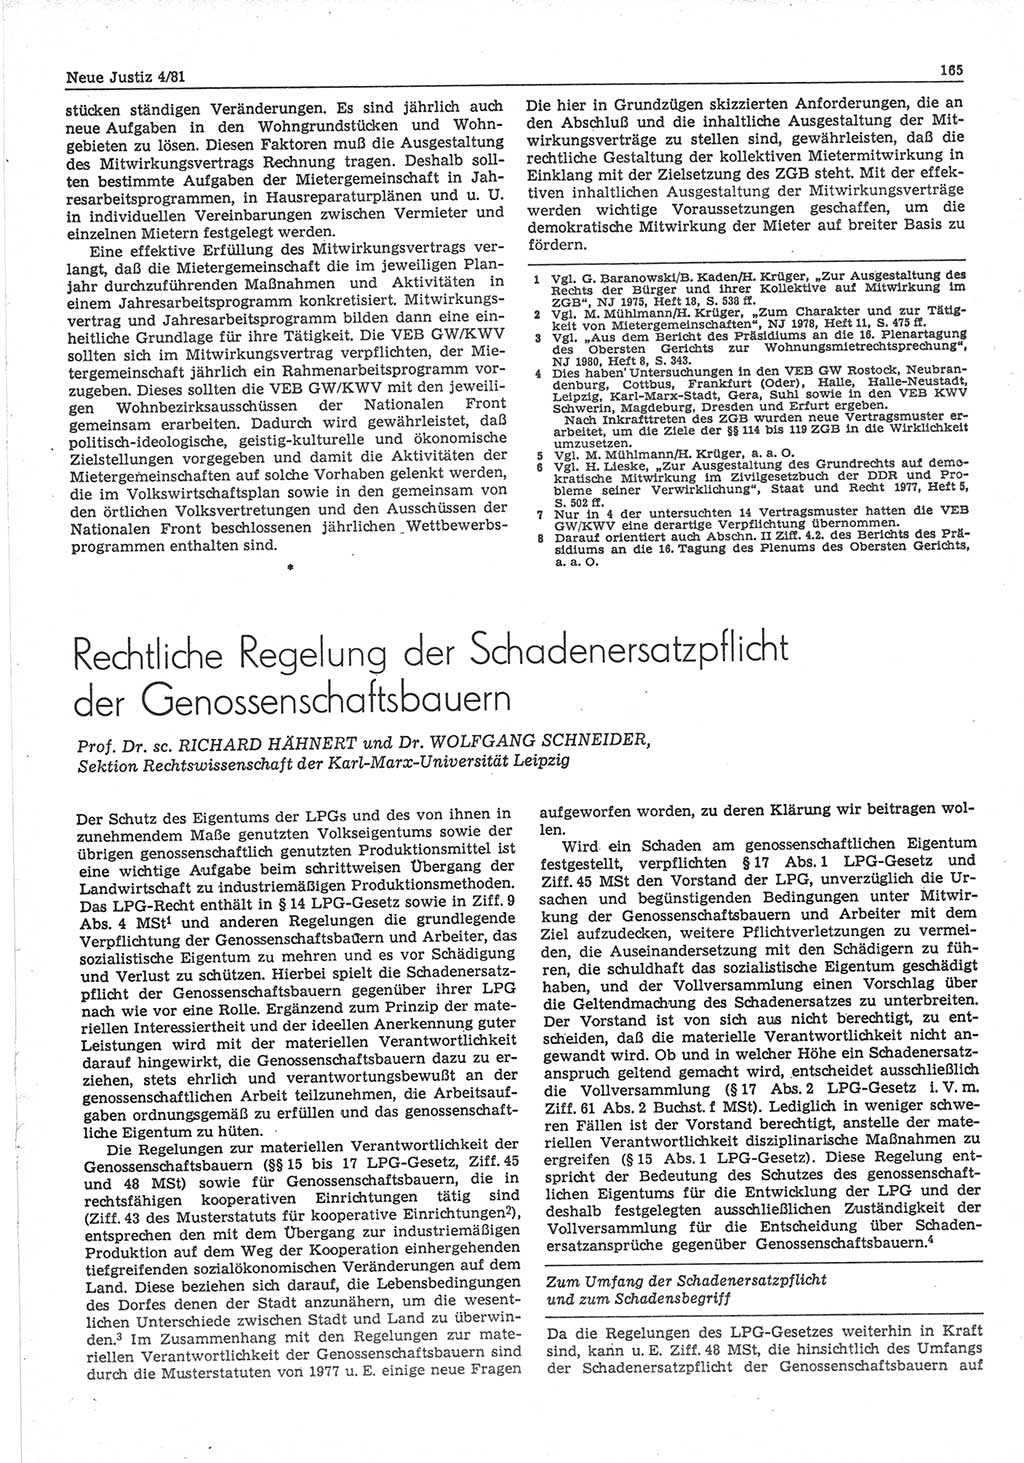 Neue Justiz (NJ), Zeitschrift für sozialistisches Recht und Gesetzlichkeit [Deutsche Demokratische Republik (DDR)], 35. Jahrgang 1981, Seite 165 (NJ DDR 1981, S. 165)